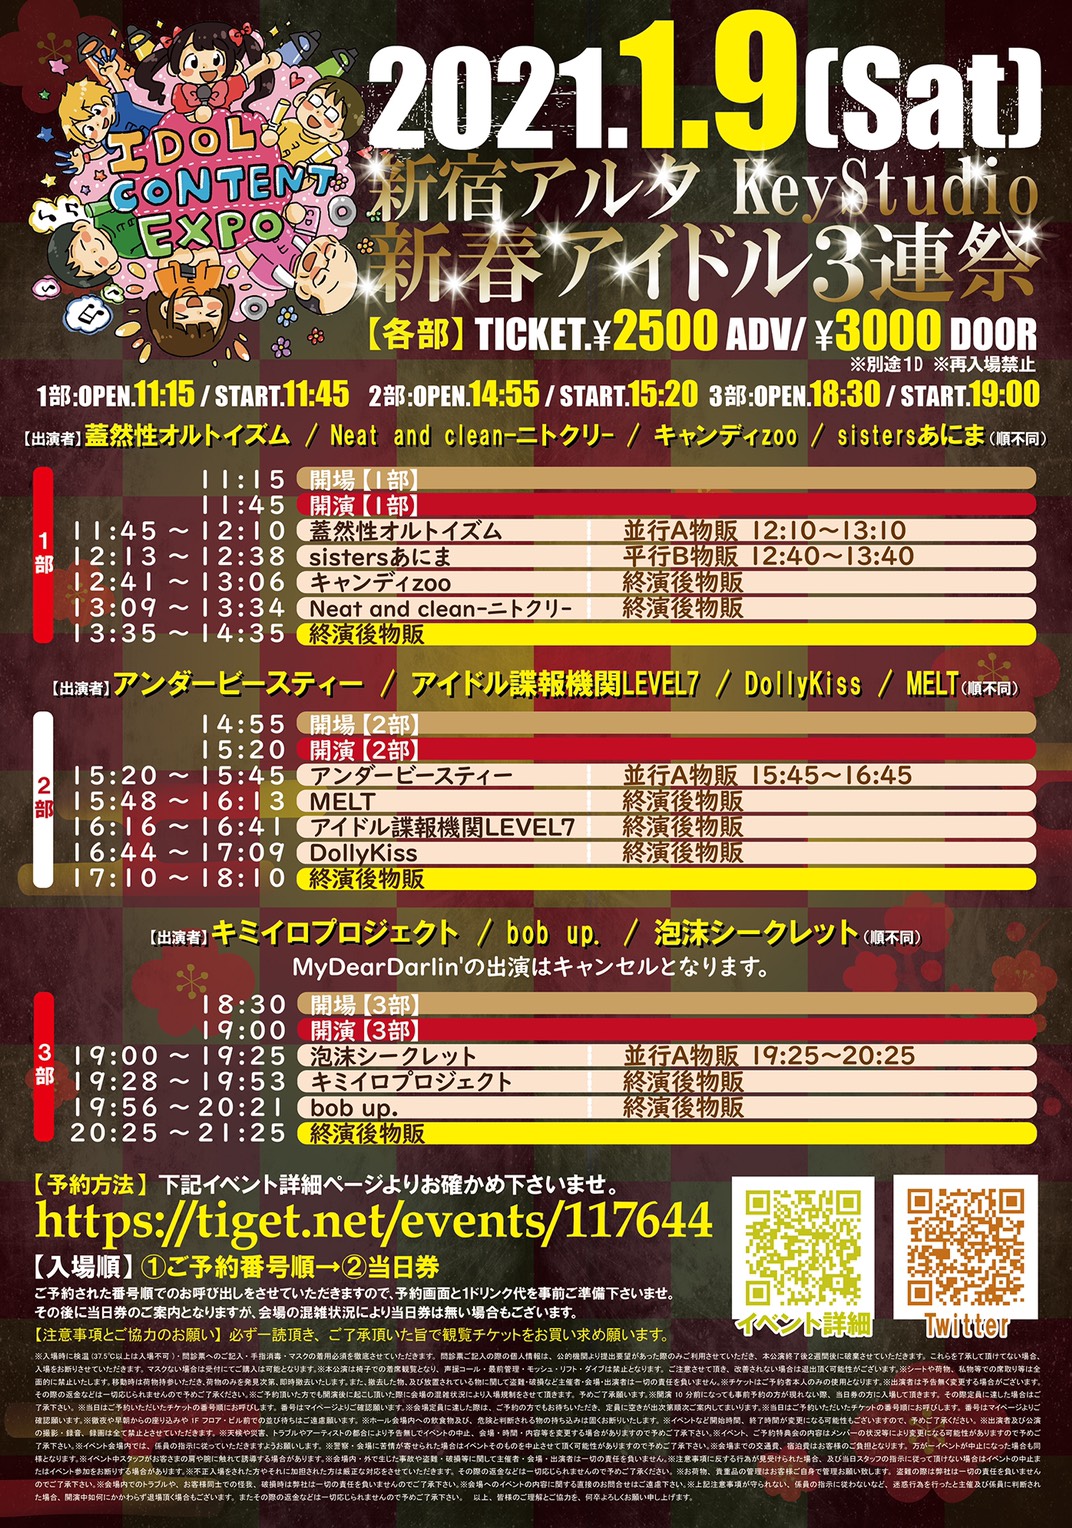 IDOL CONTENT EXPO @ 新宿アルタ KeyStudio 新春アイドル３連祭